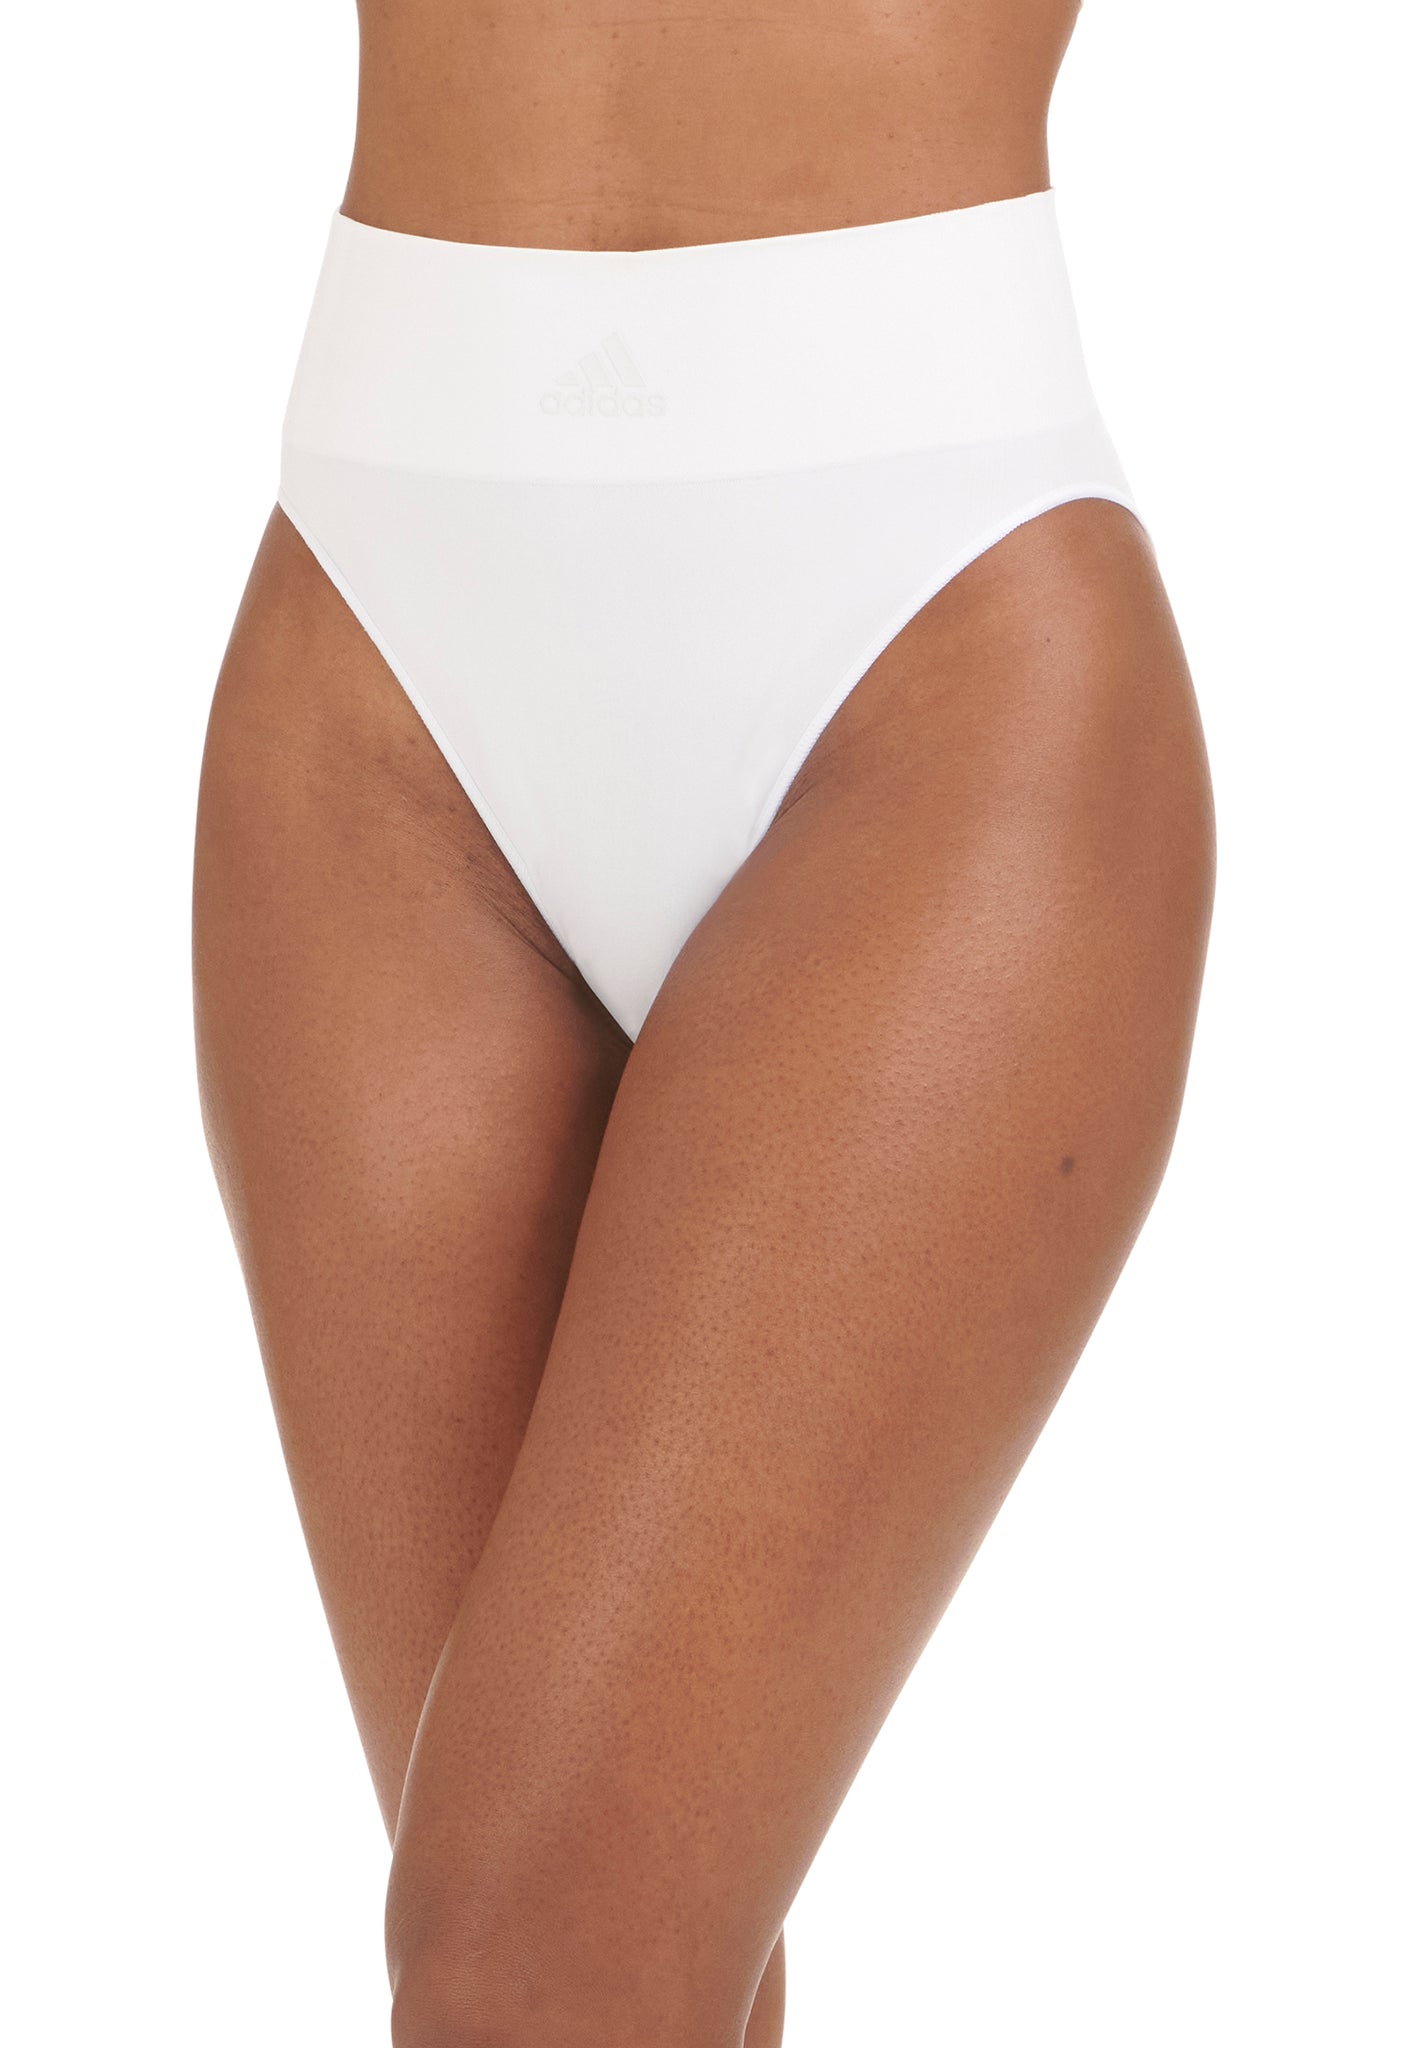 hiidubai.com - 5/- AED 1PC Seamless Slim Panty Product